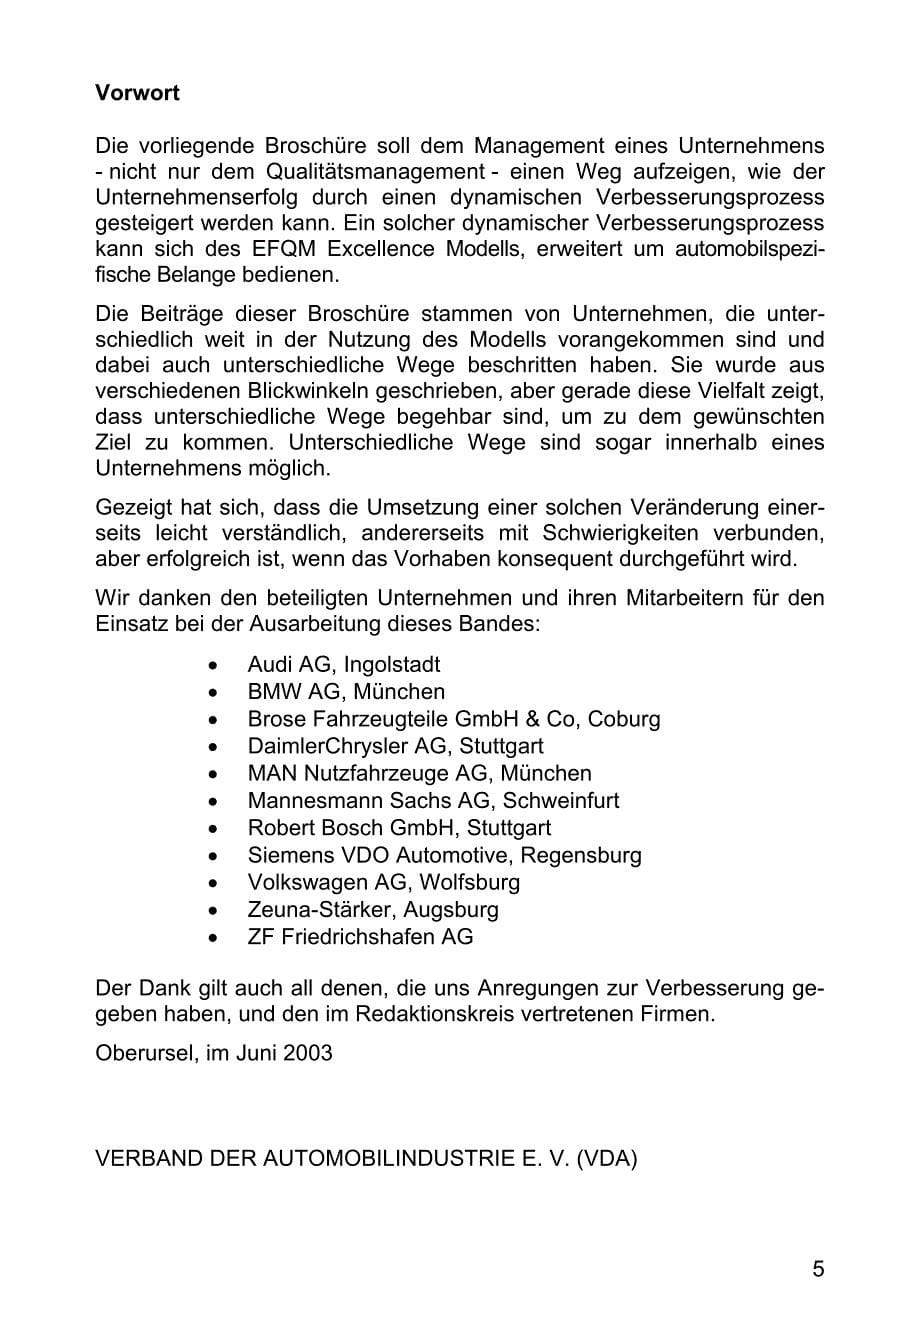 德国汽车工业质量标准VDA 18_de_第5页